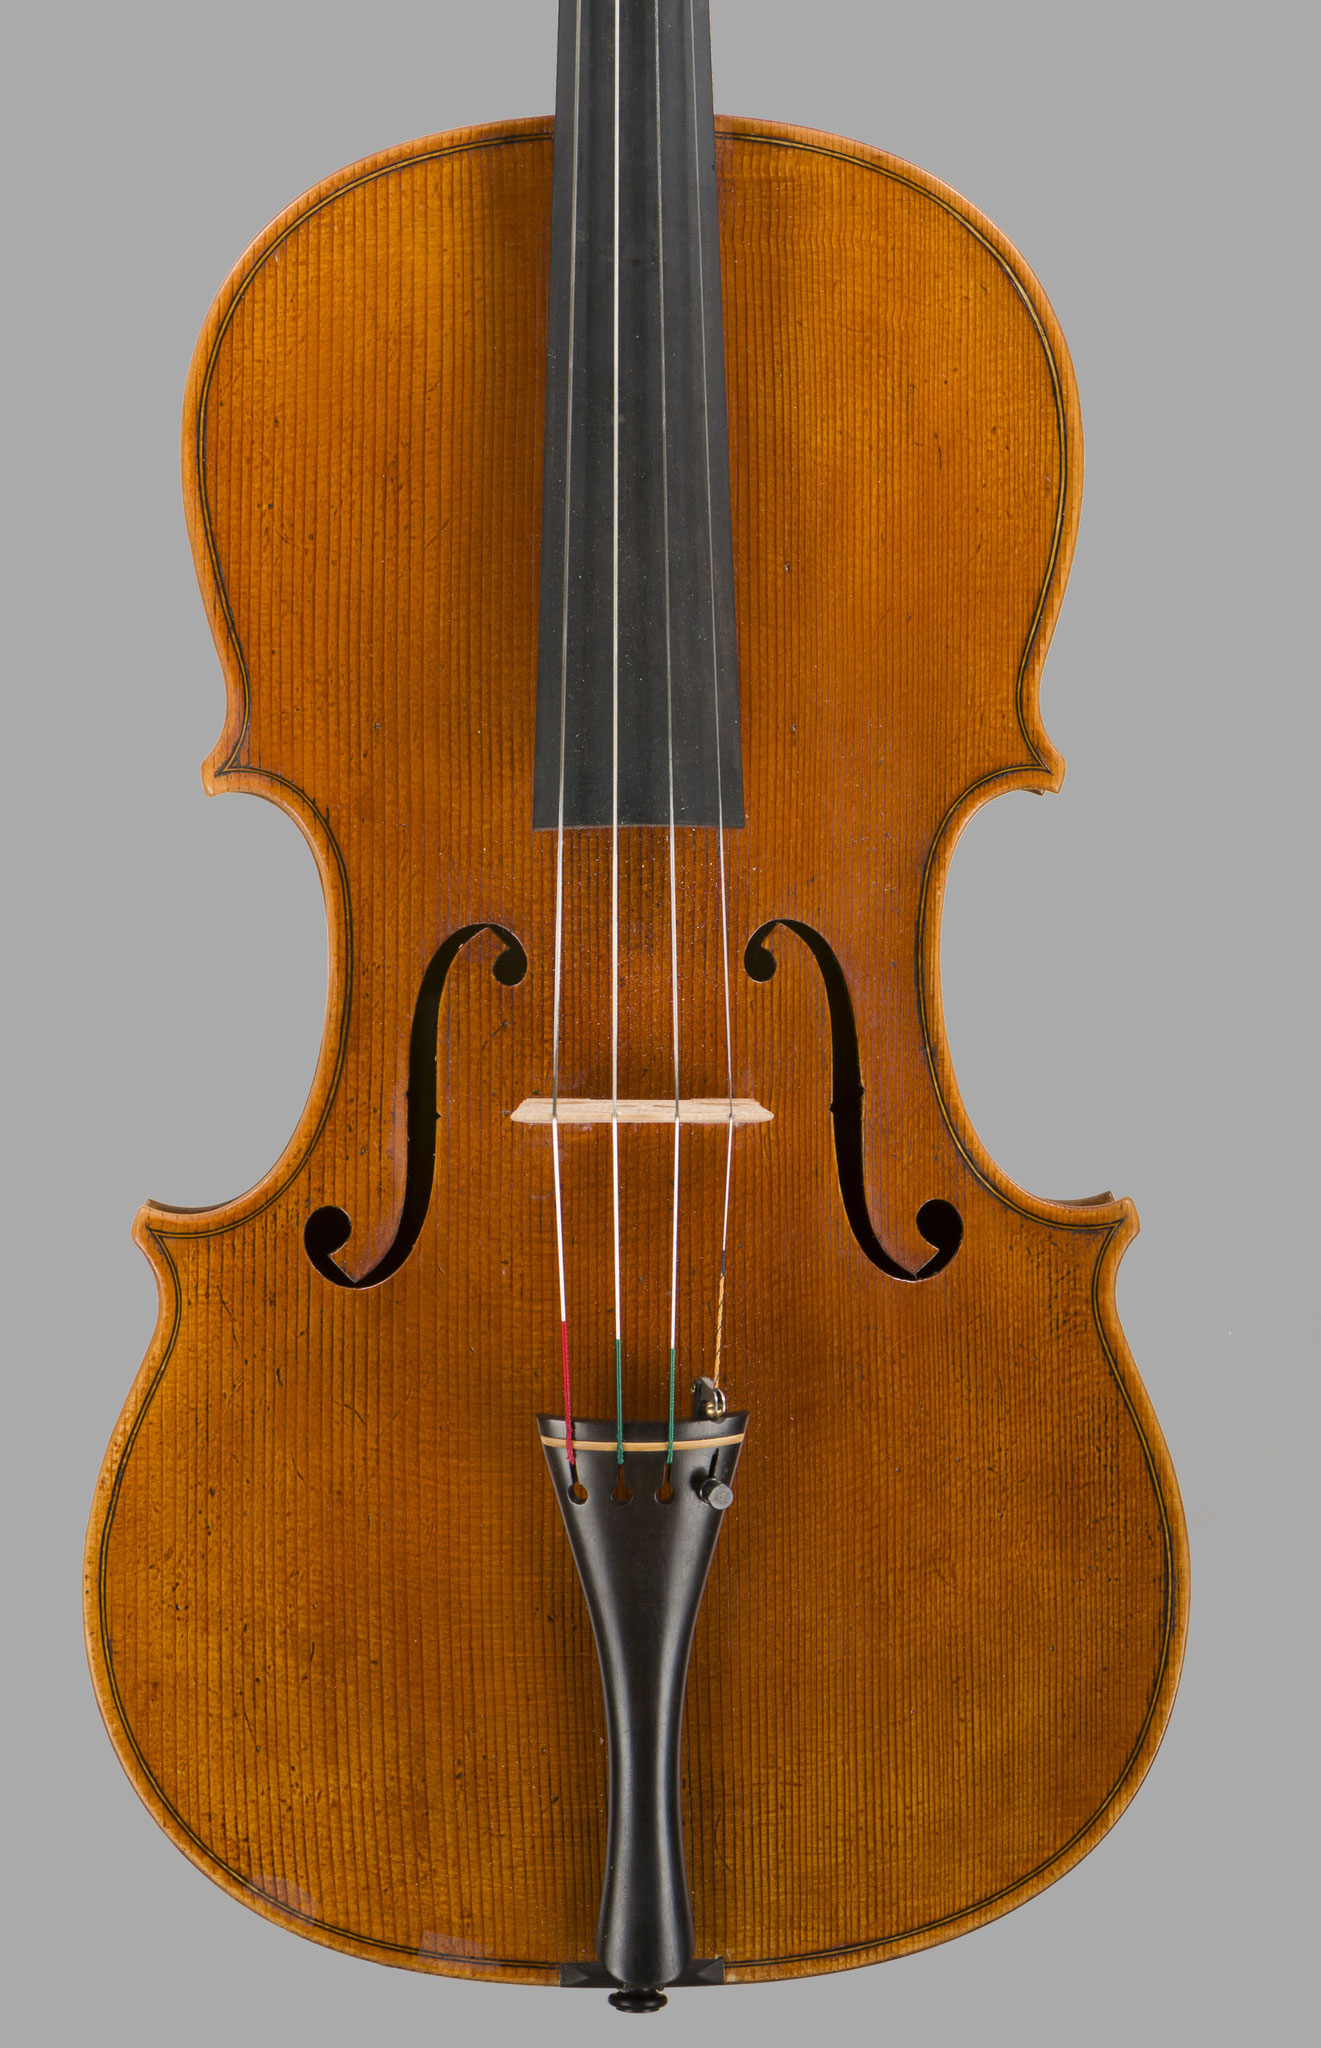 Viola nach Giovanni Battista Guadagnini 1747, Piacenza – 1